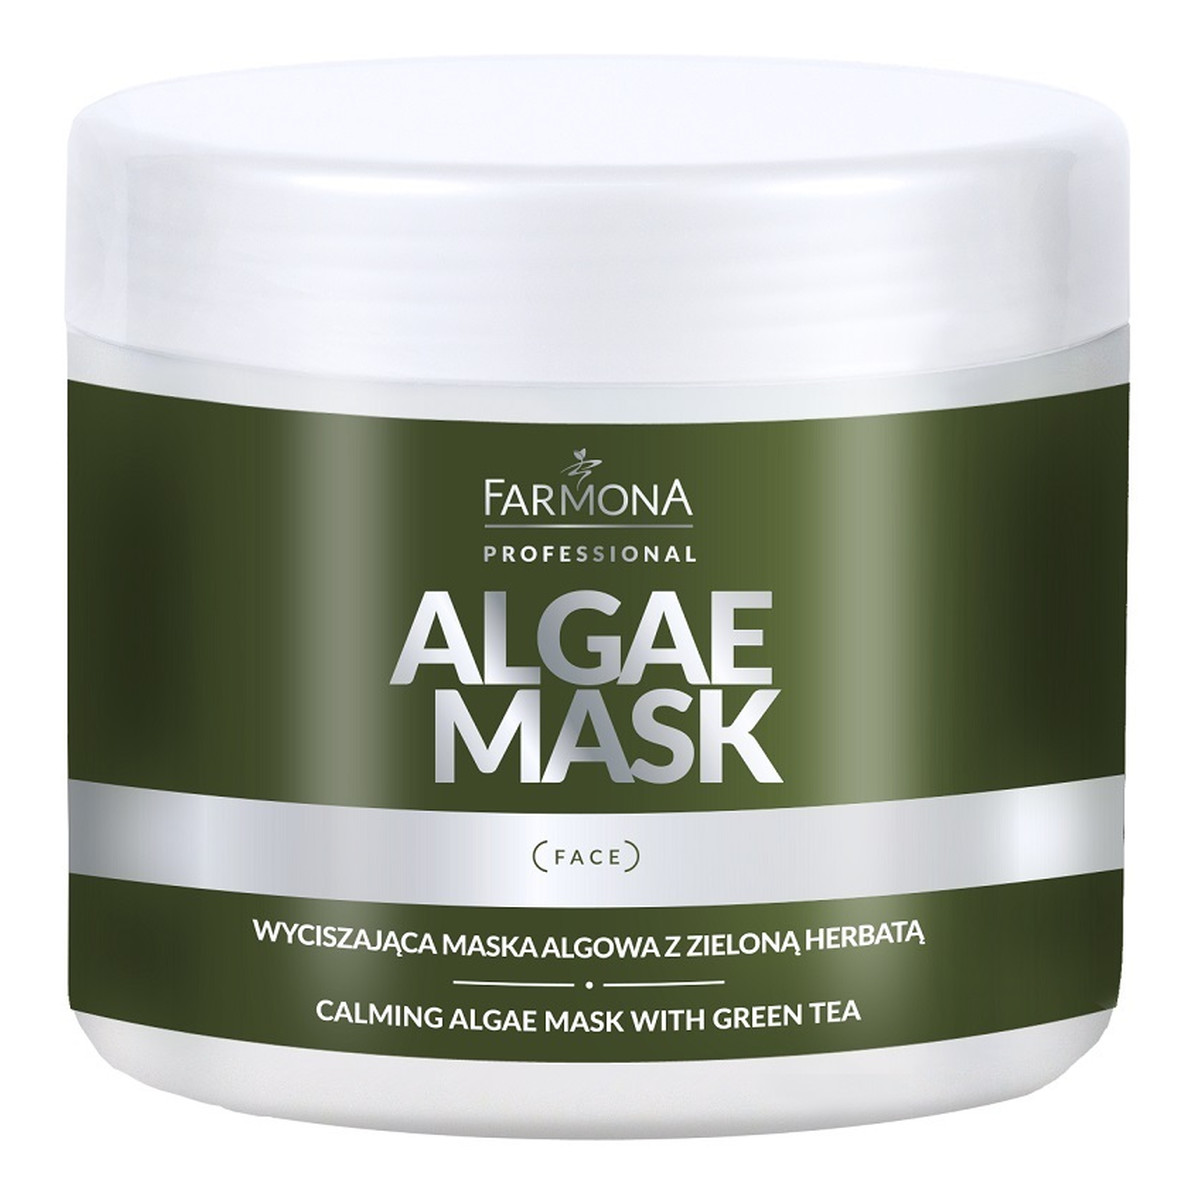 Farmona Professional Algae Mask Wyciszająca maska algowa z zieloną herbatą 160g